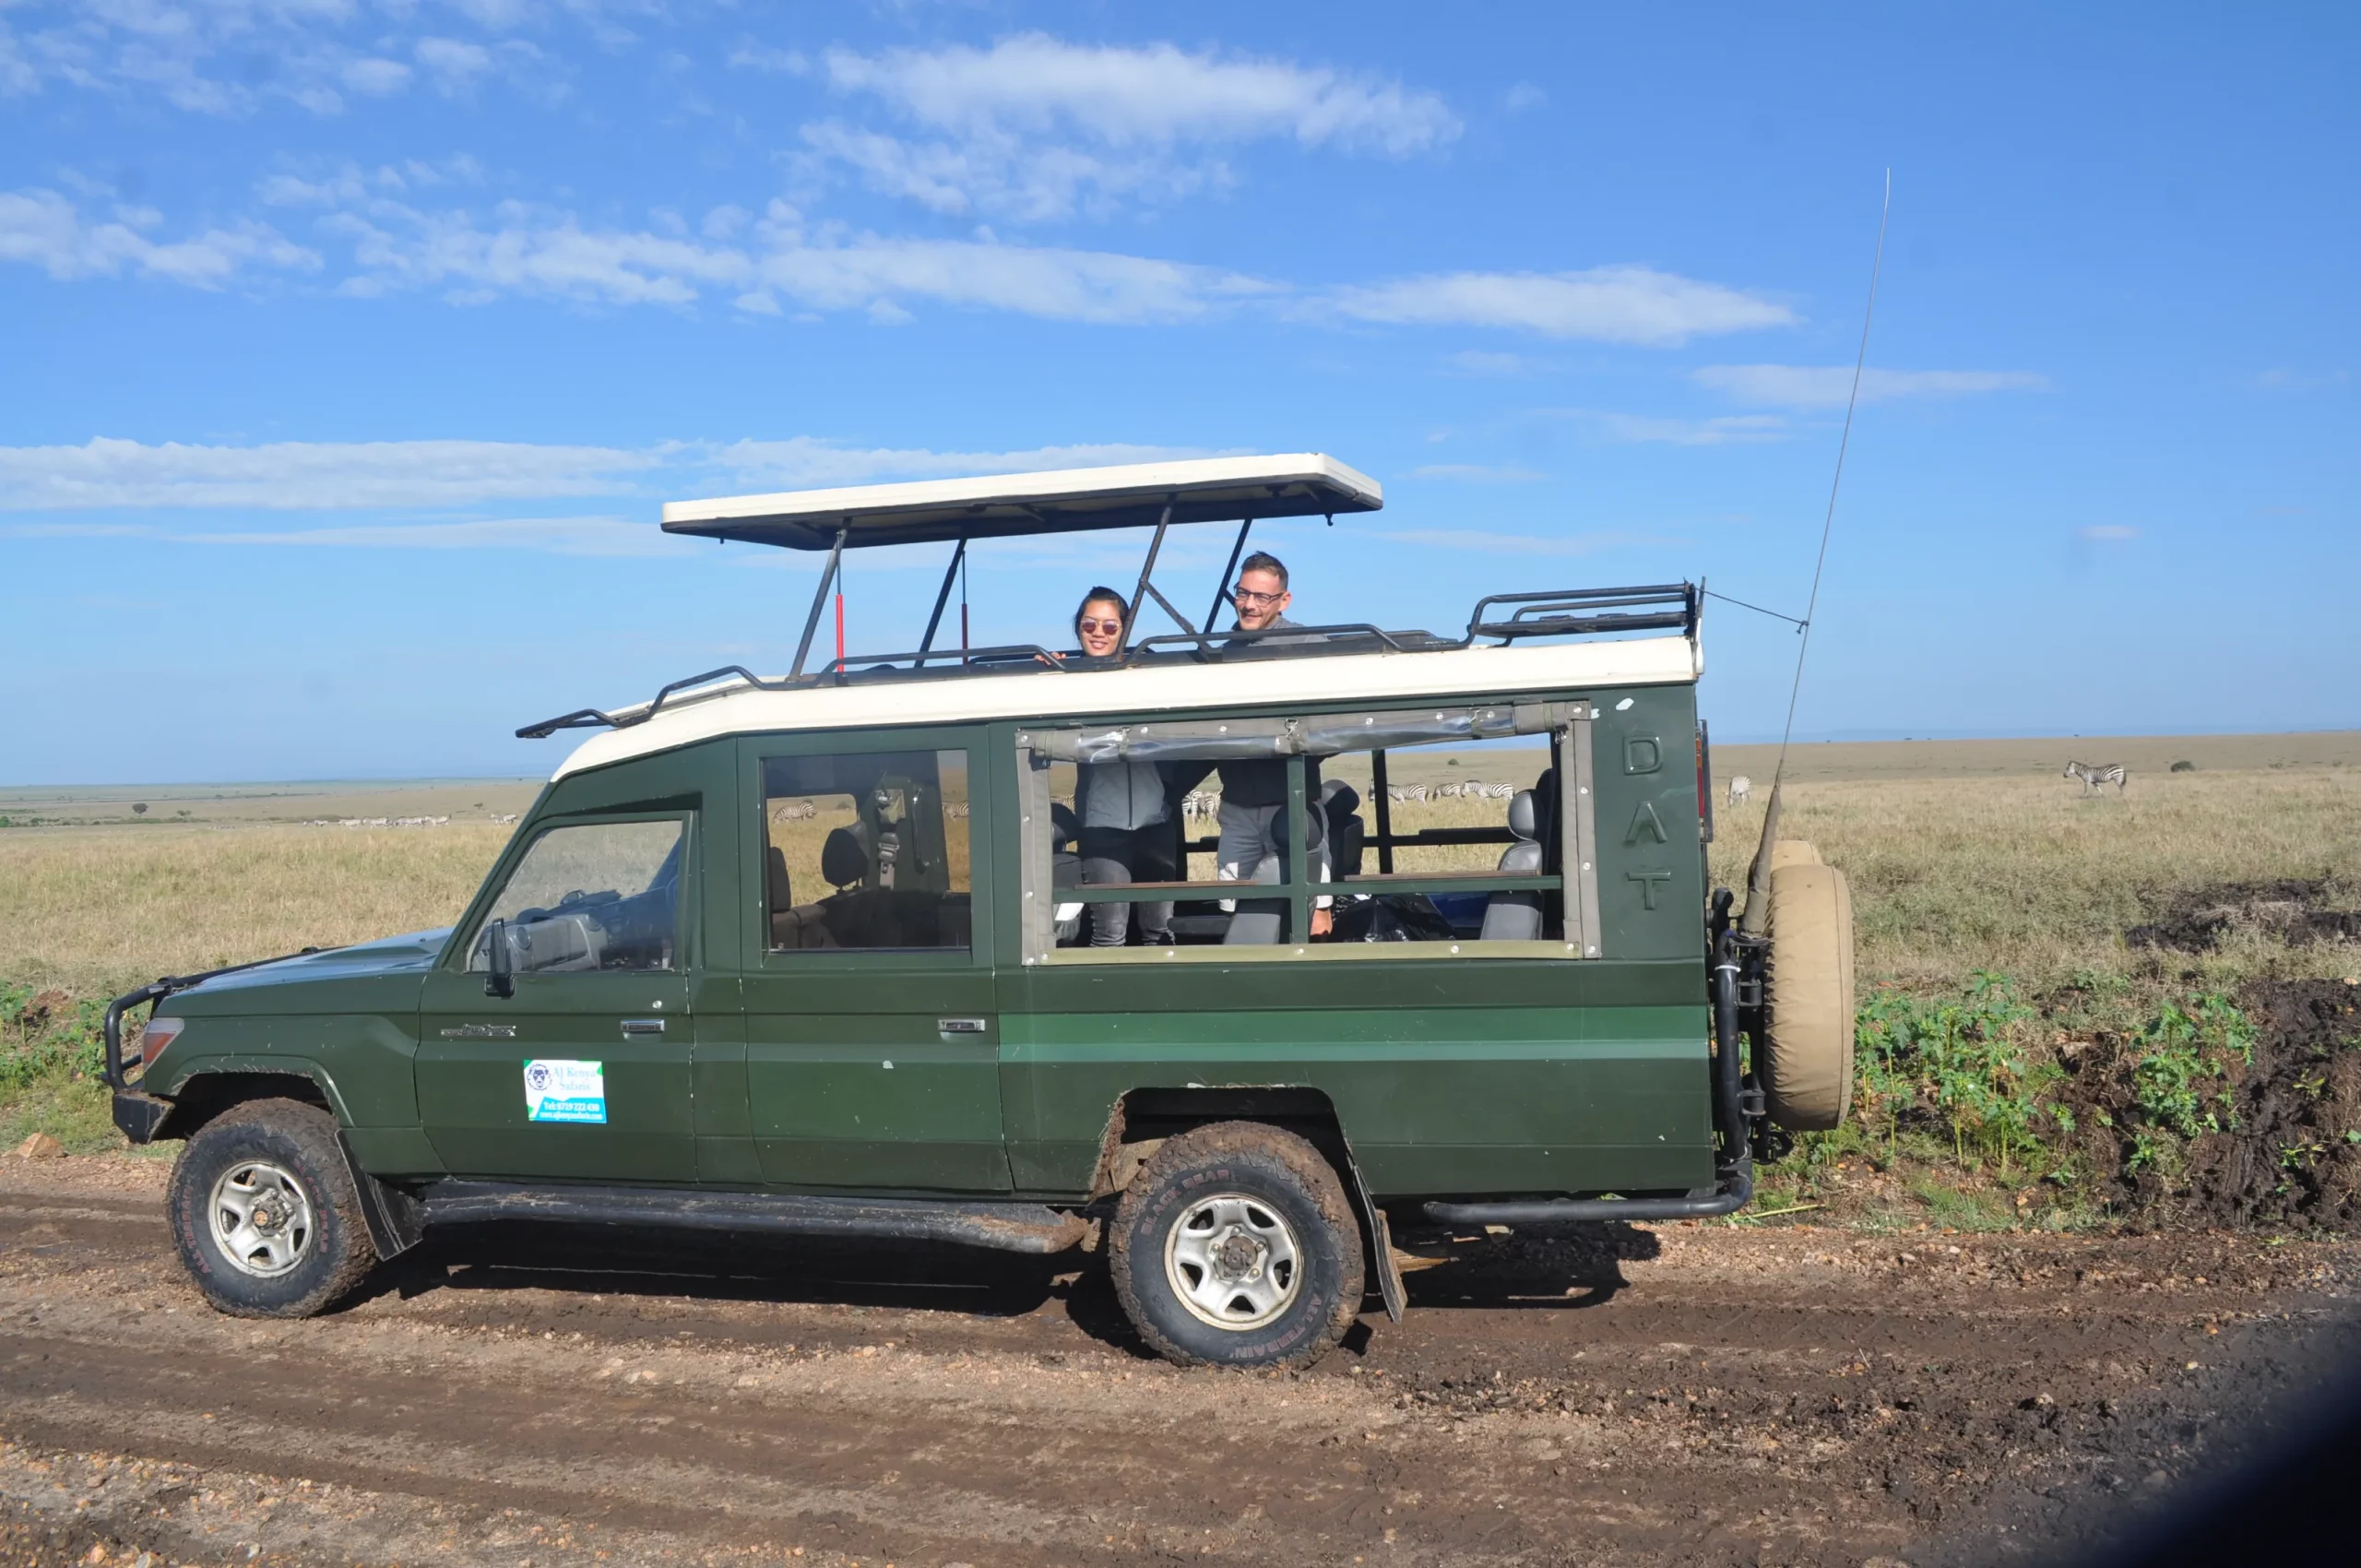 Game drives at Masai Mara